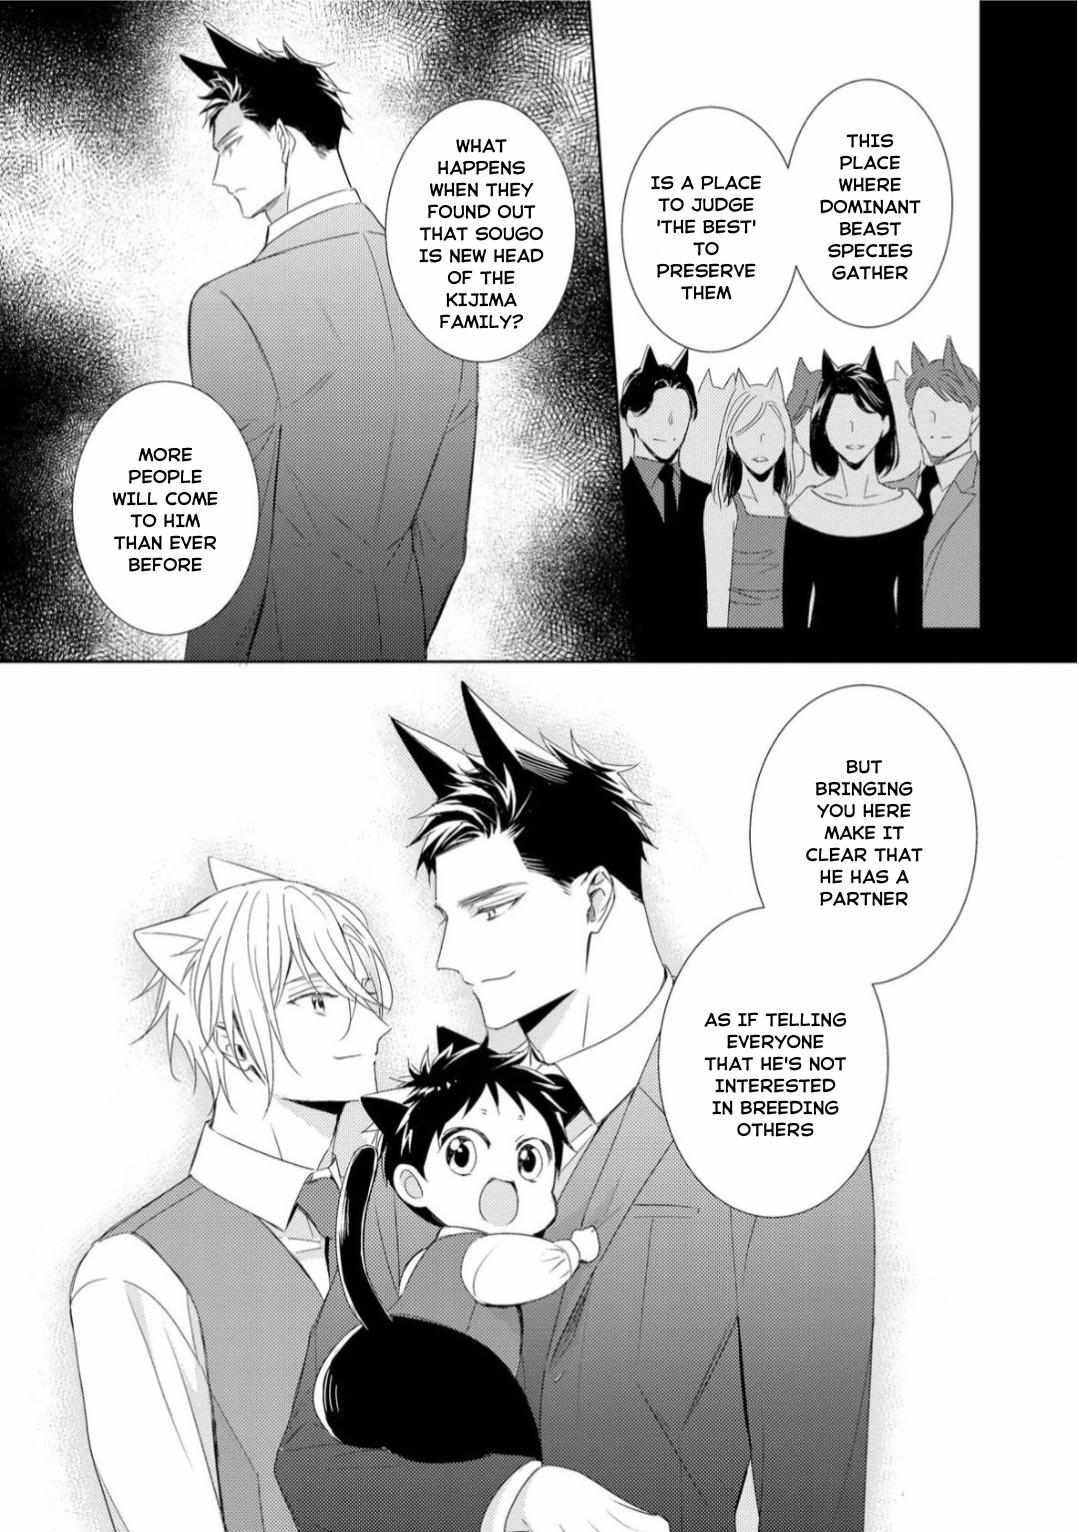 Kedamono Arashi -Love Me Baby!- - 1 page 14-69558d2d